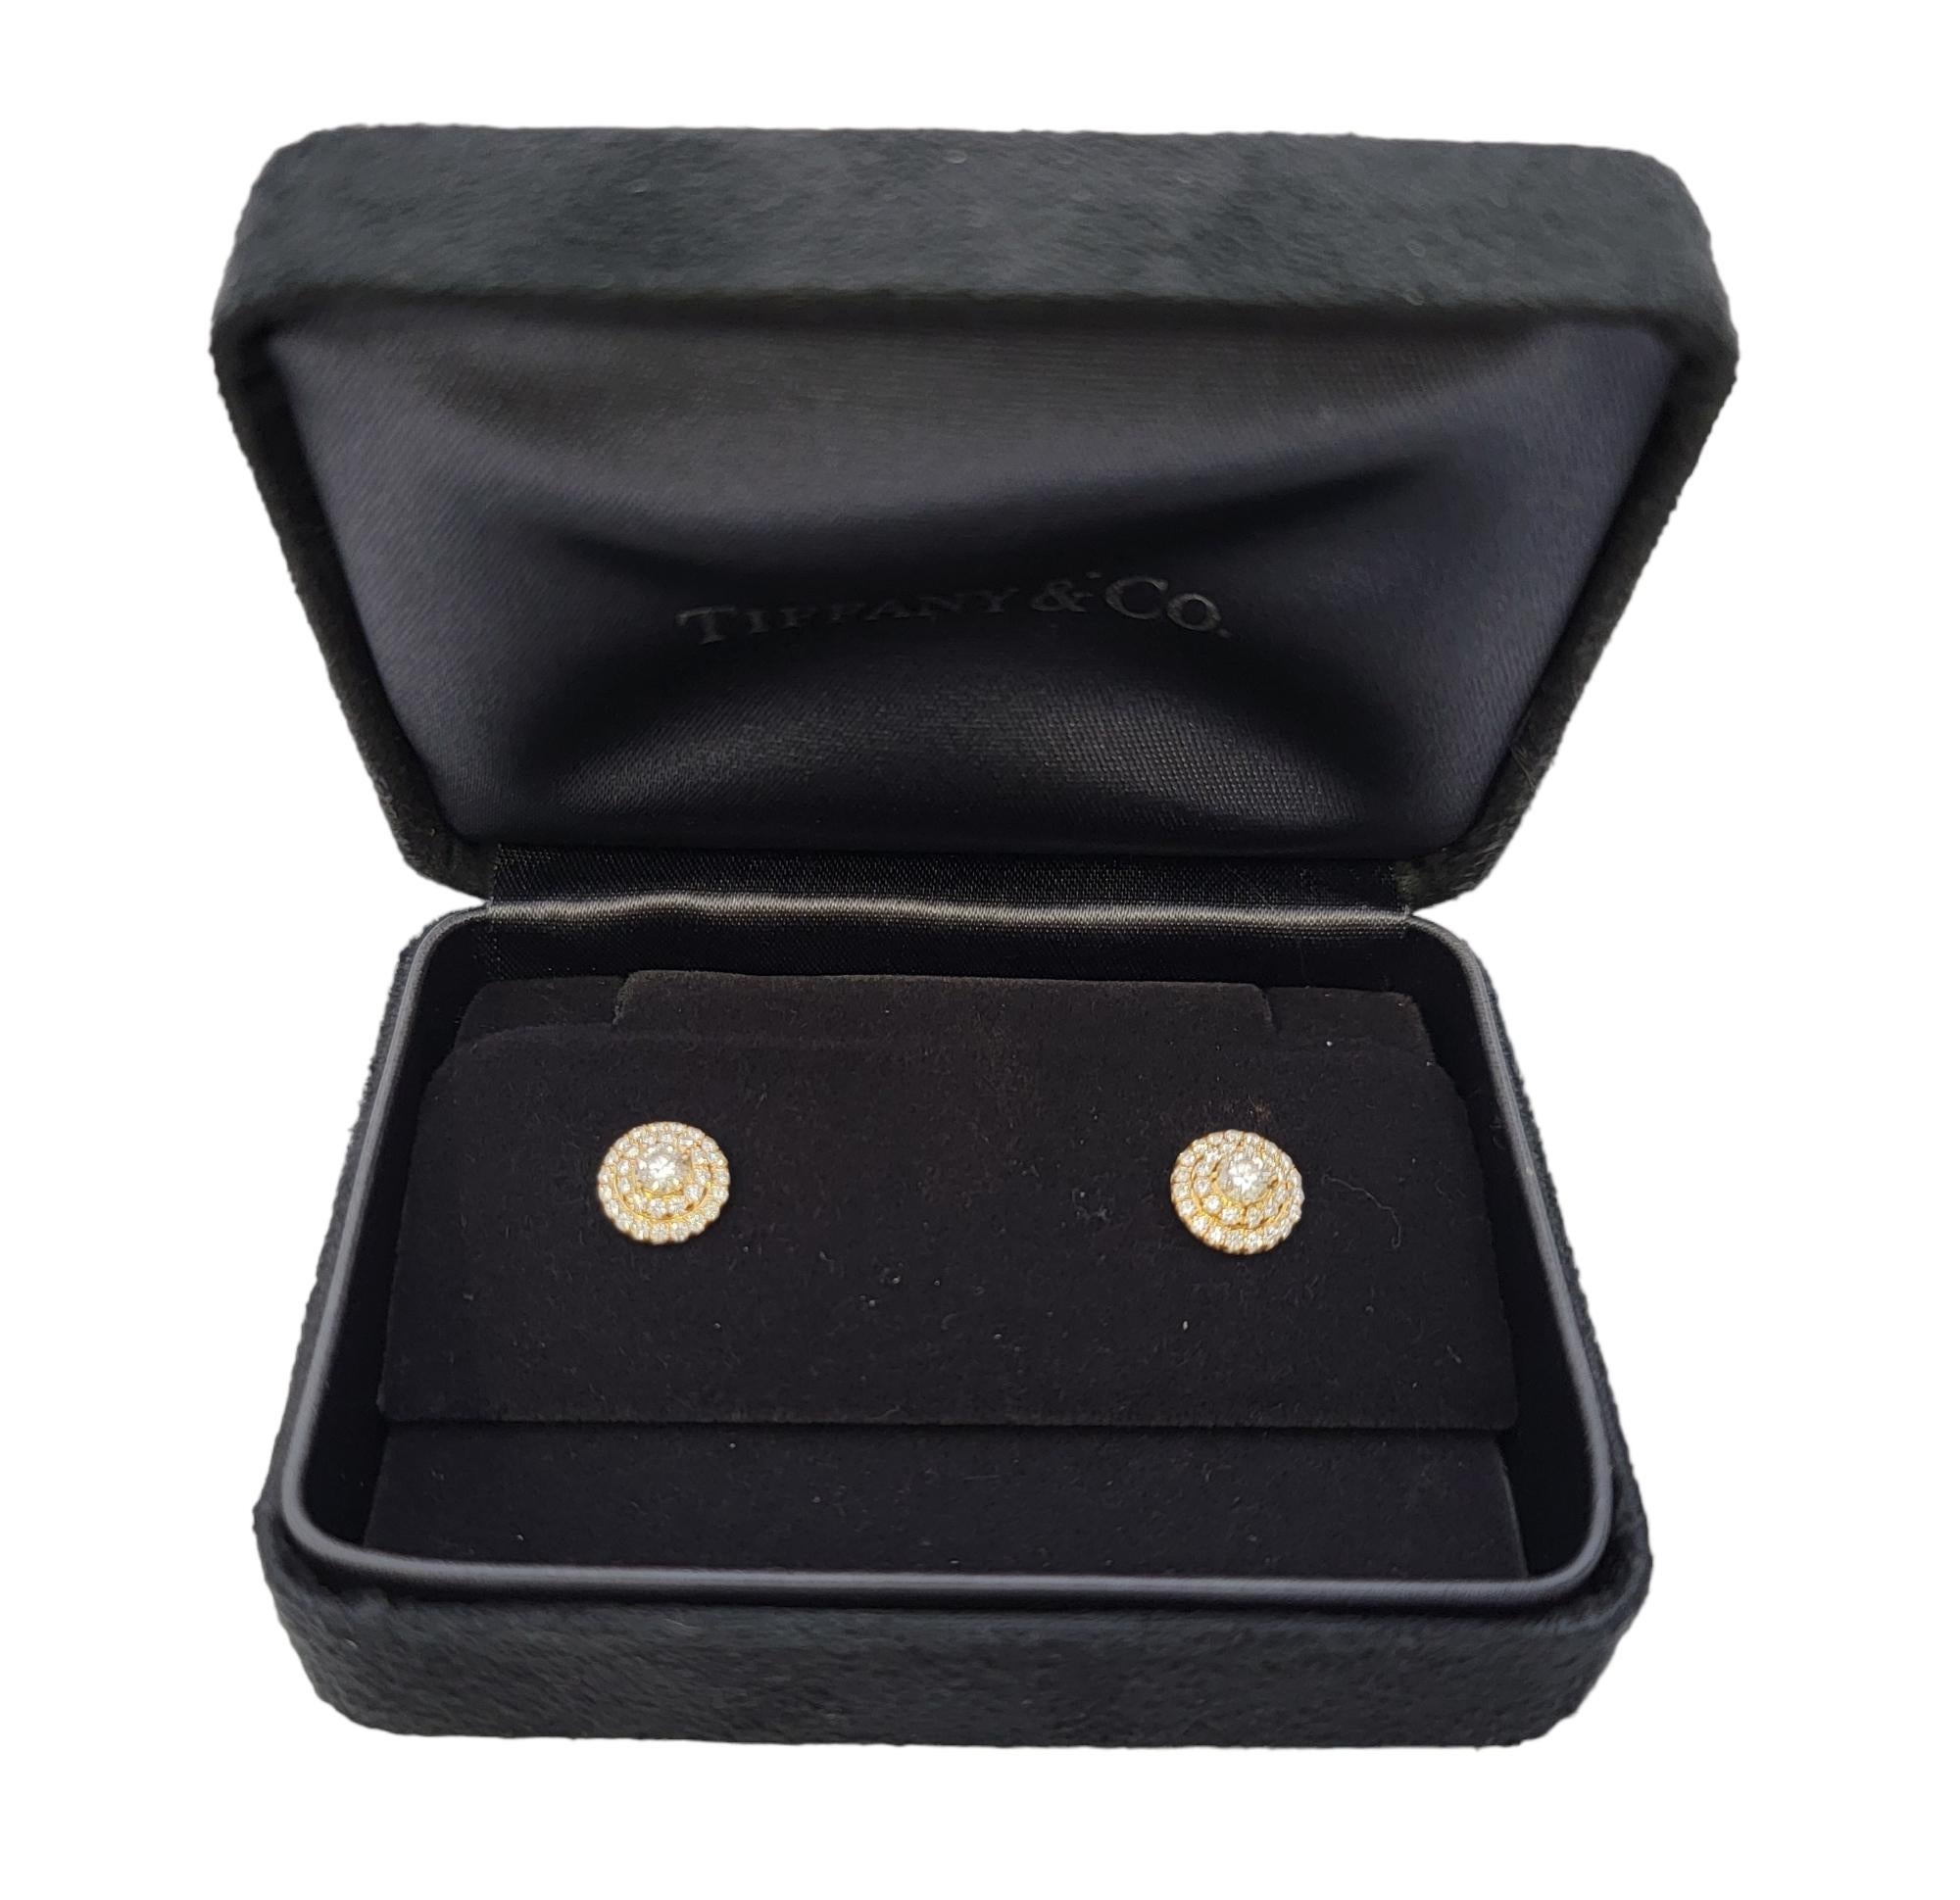 Tiffany & Co. Soleste Diamond Double Halo Stud Earrings in 18 Karat Yellow Gold  5